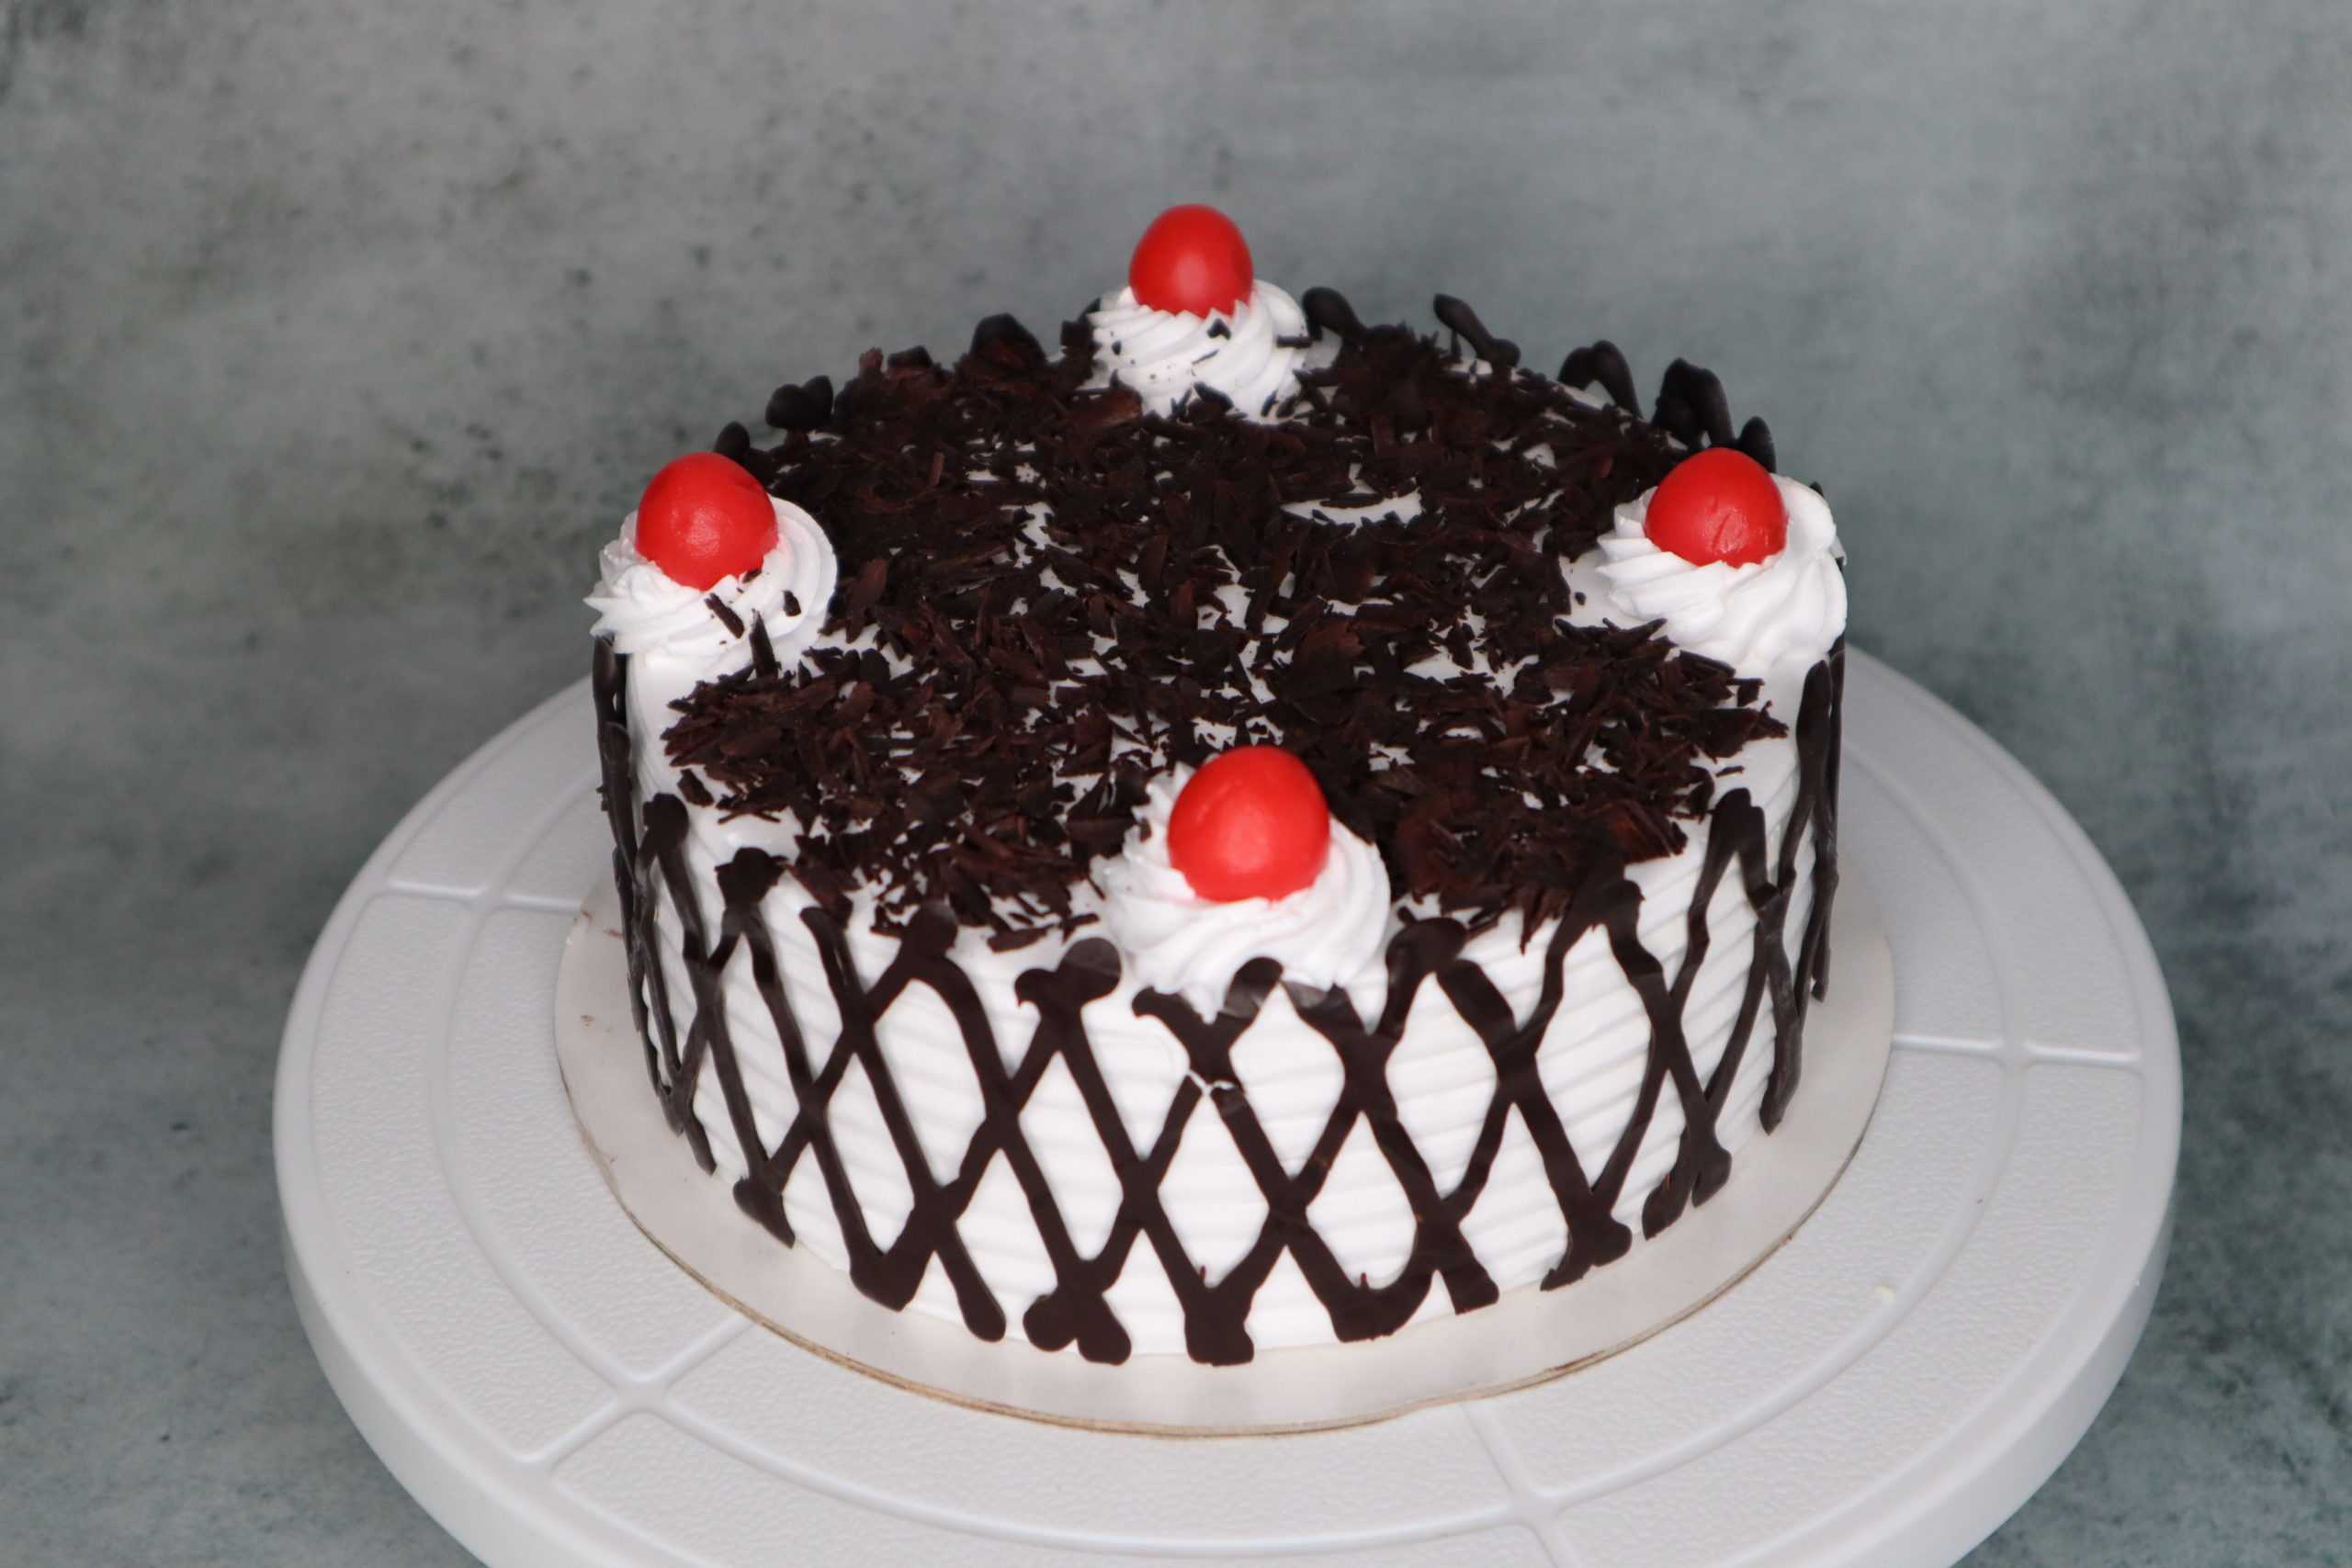 Black forest cake New Design /Trending cake Design /Easy cake design -  YouTube